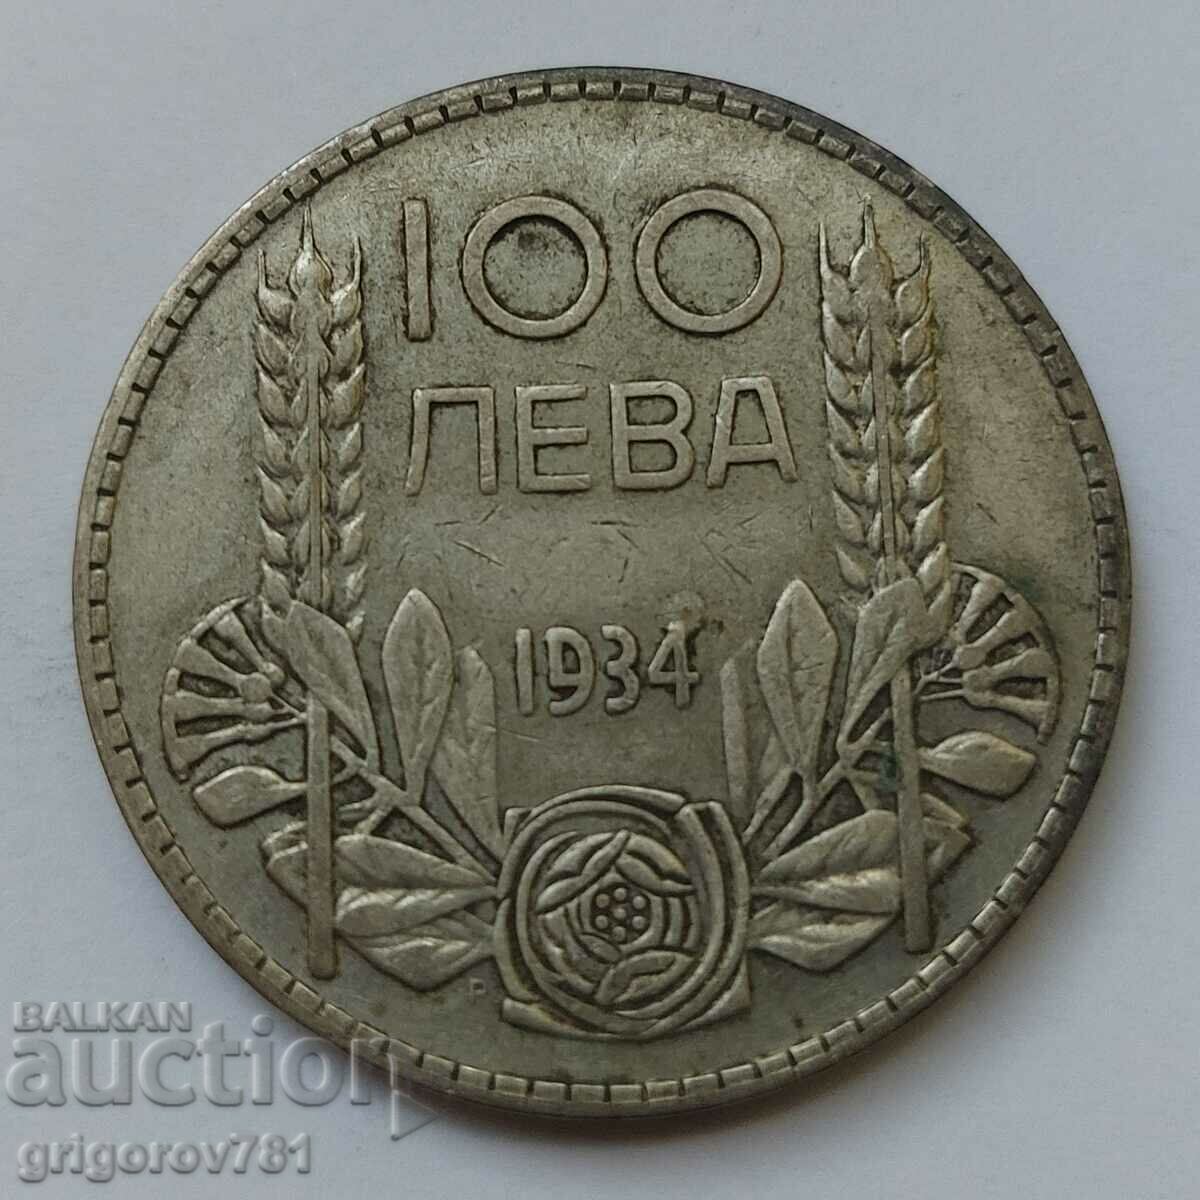 Ασήμι 100 λέβα Βουλγαρία 1934 - ασημένιο νόμισμα #5